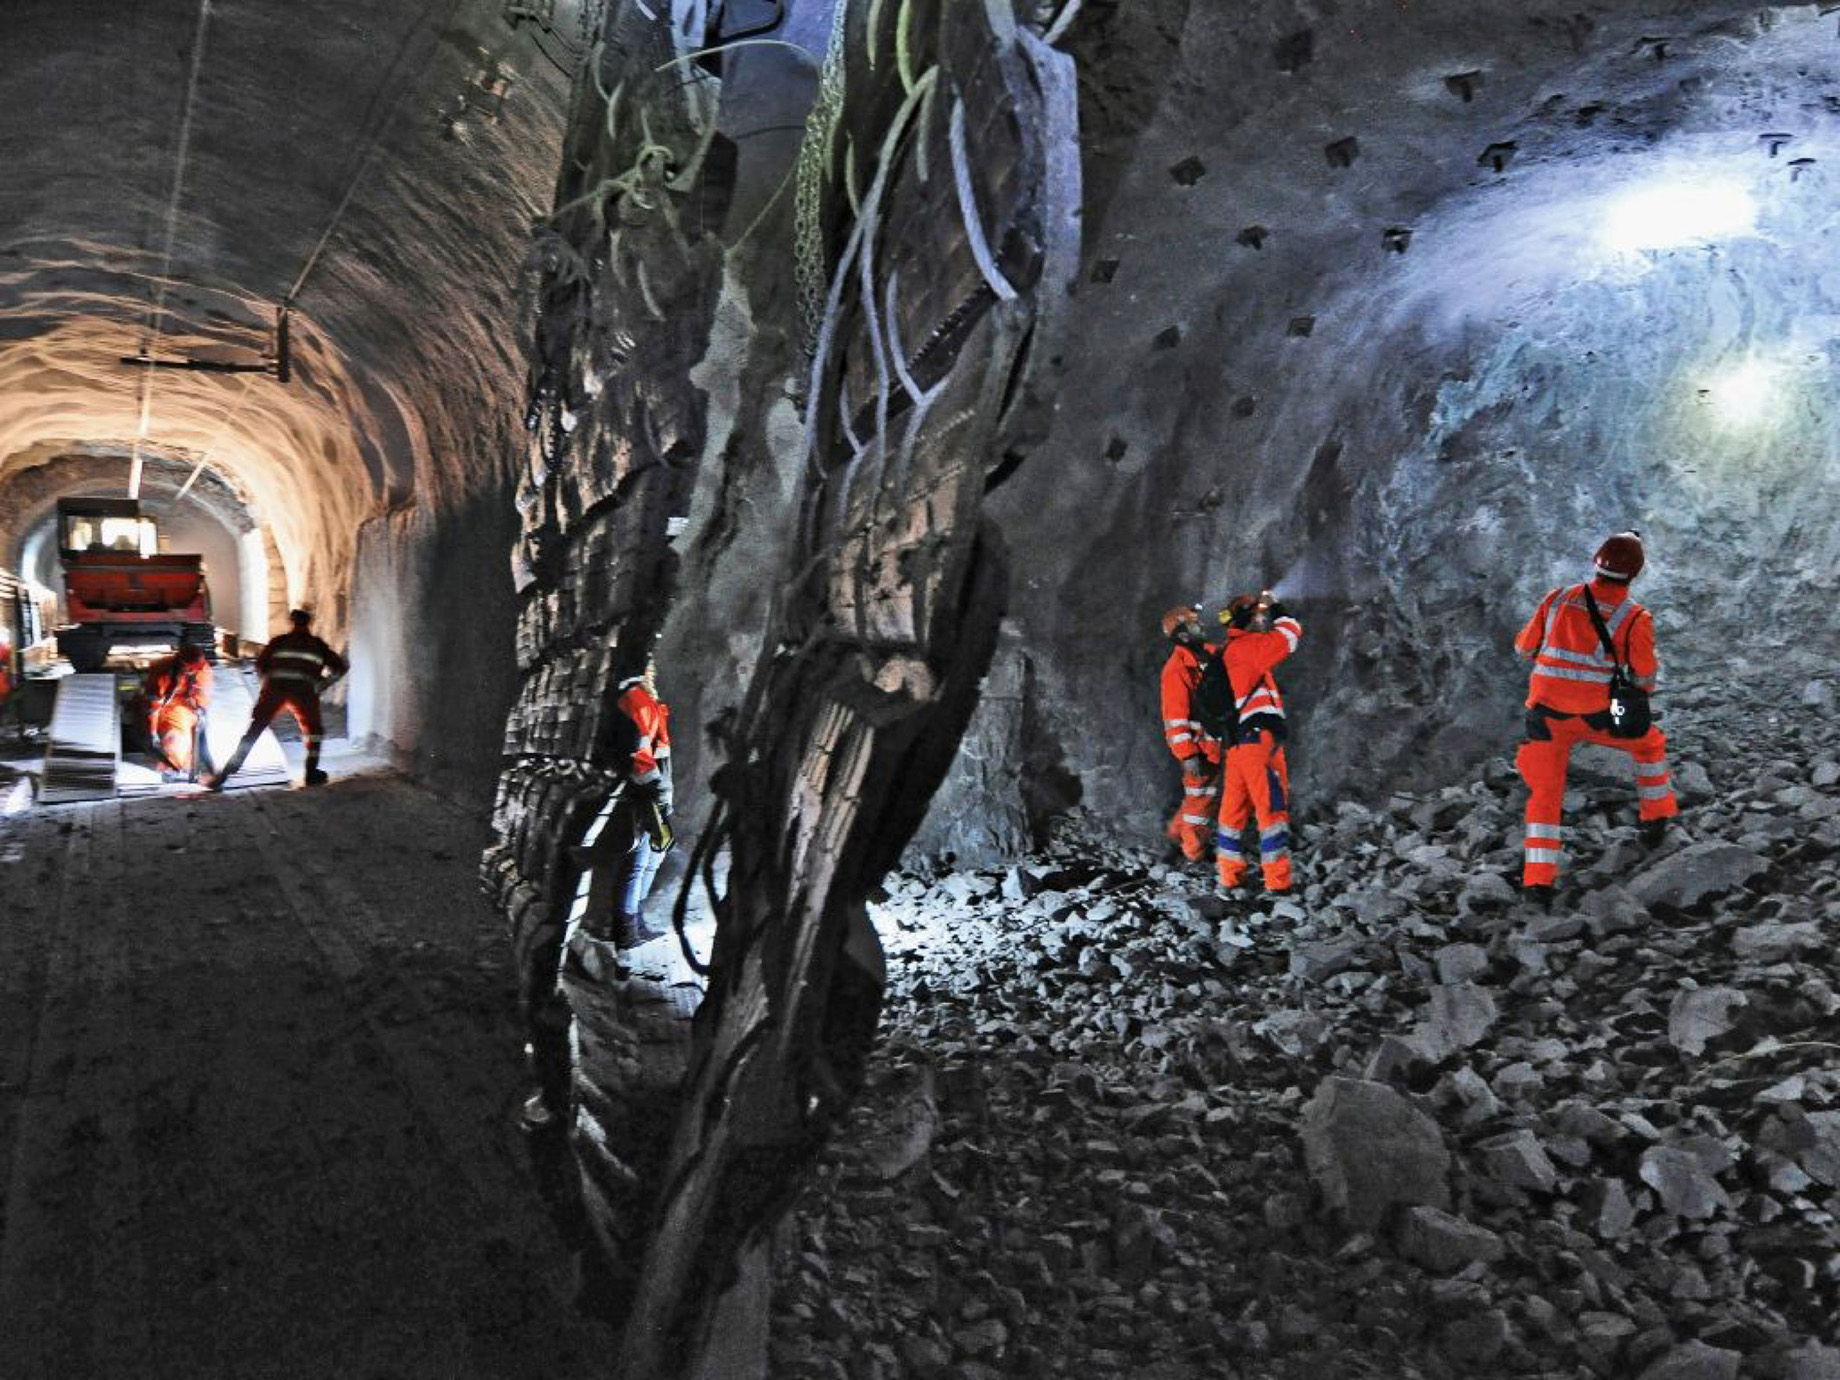 Foto: Tunnelbaustelle mit Baumaschinen und Arbeitern in Schutzkleidung